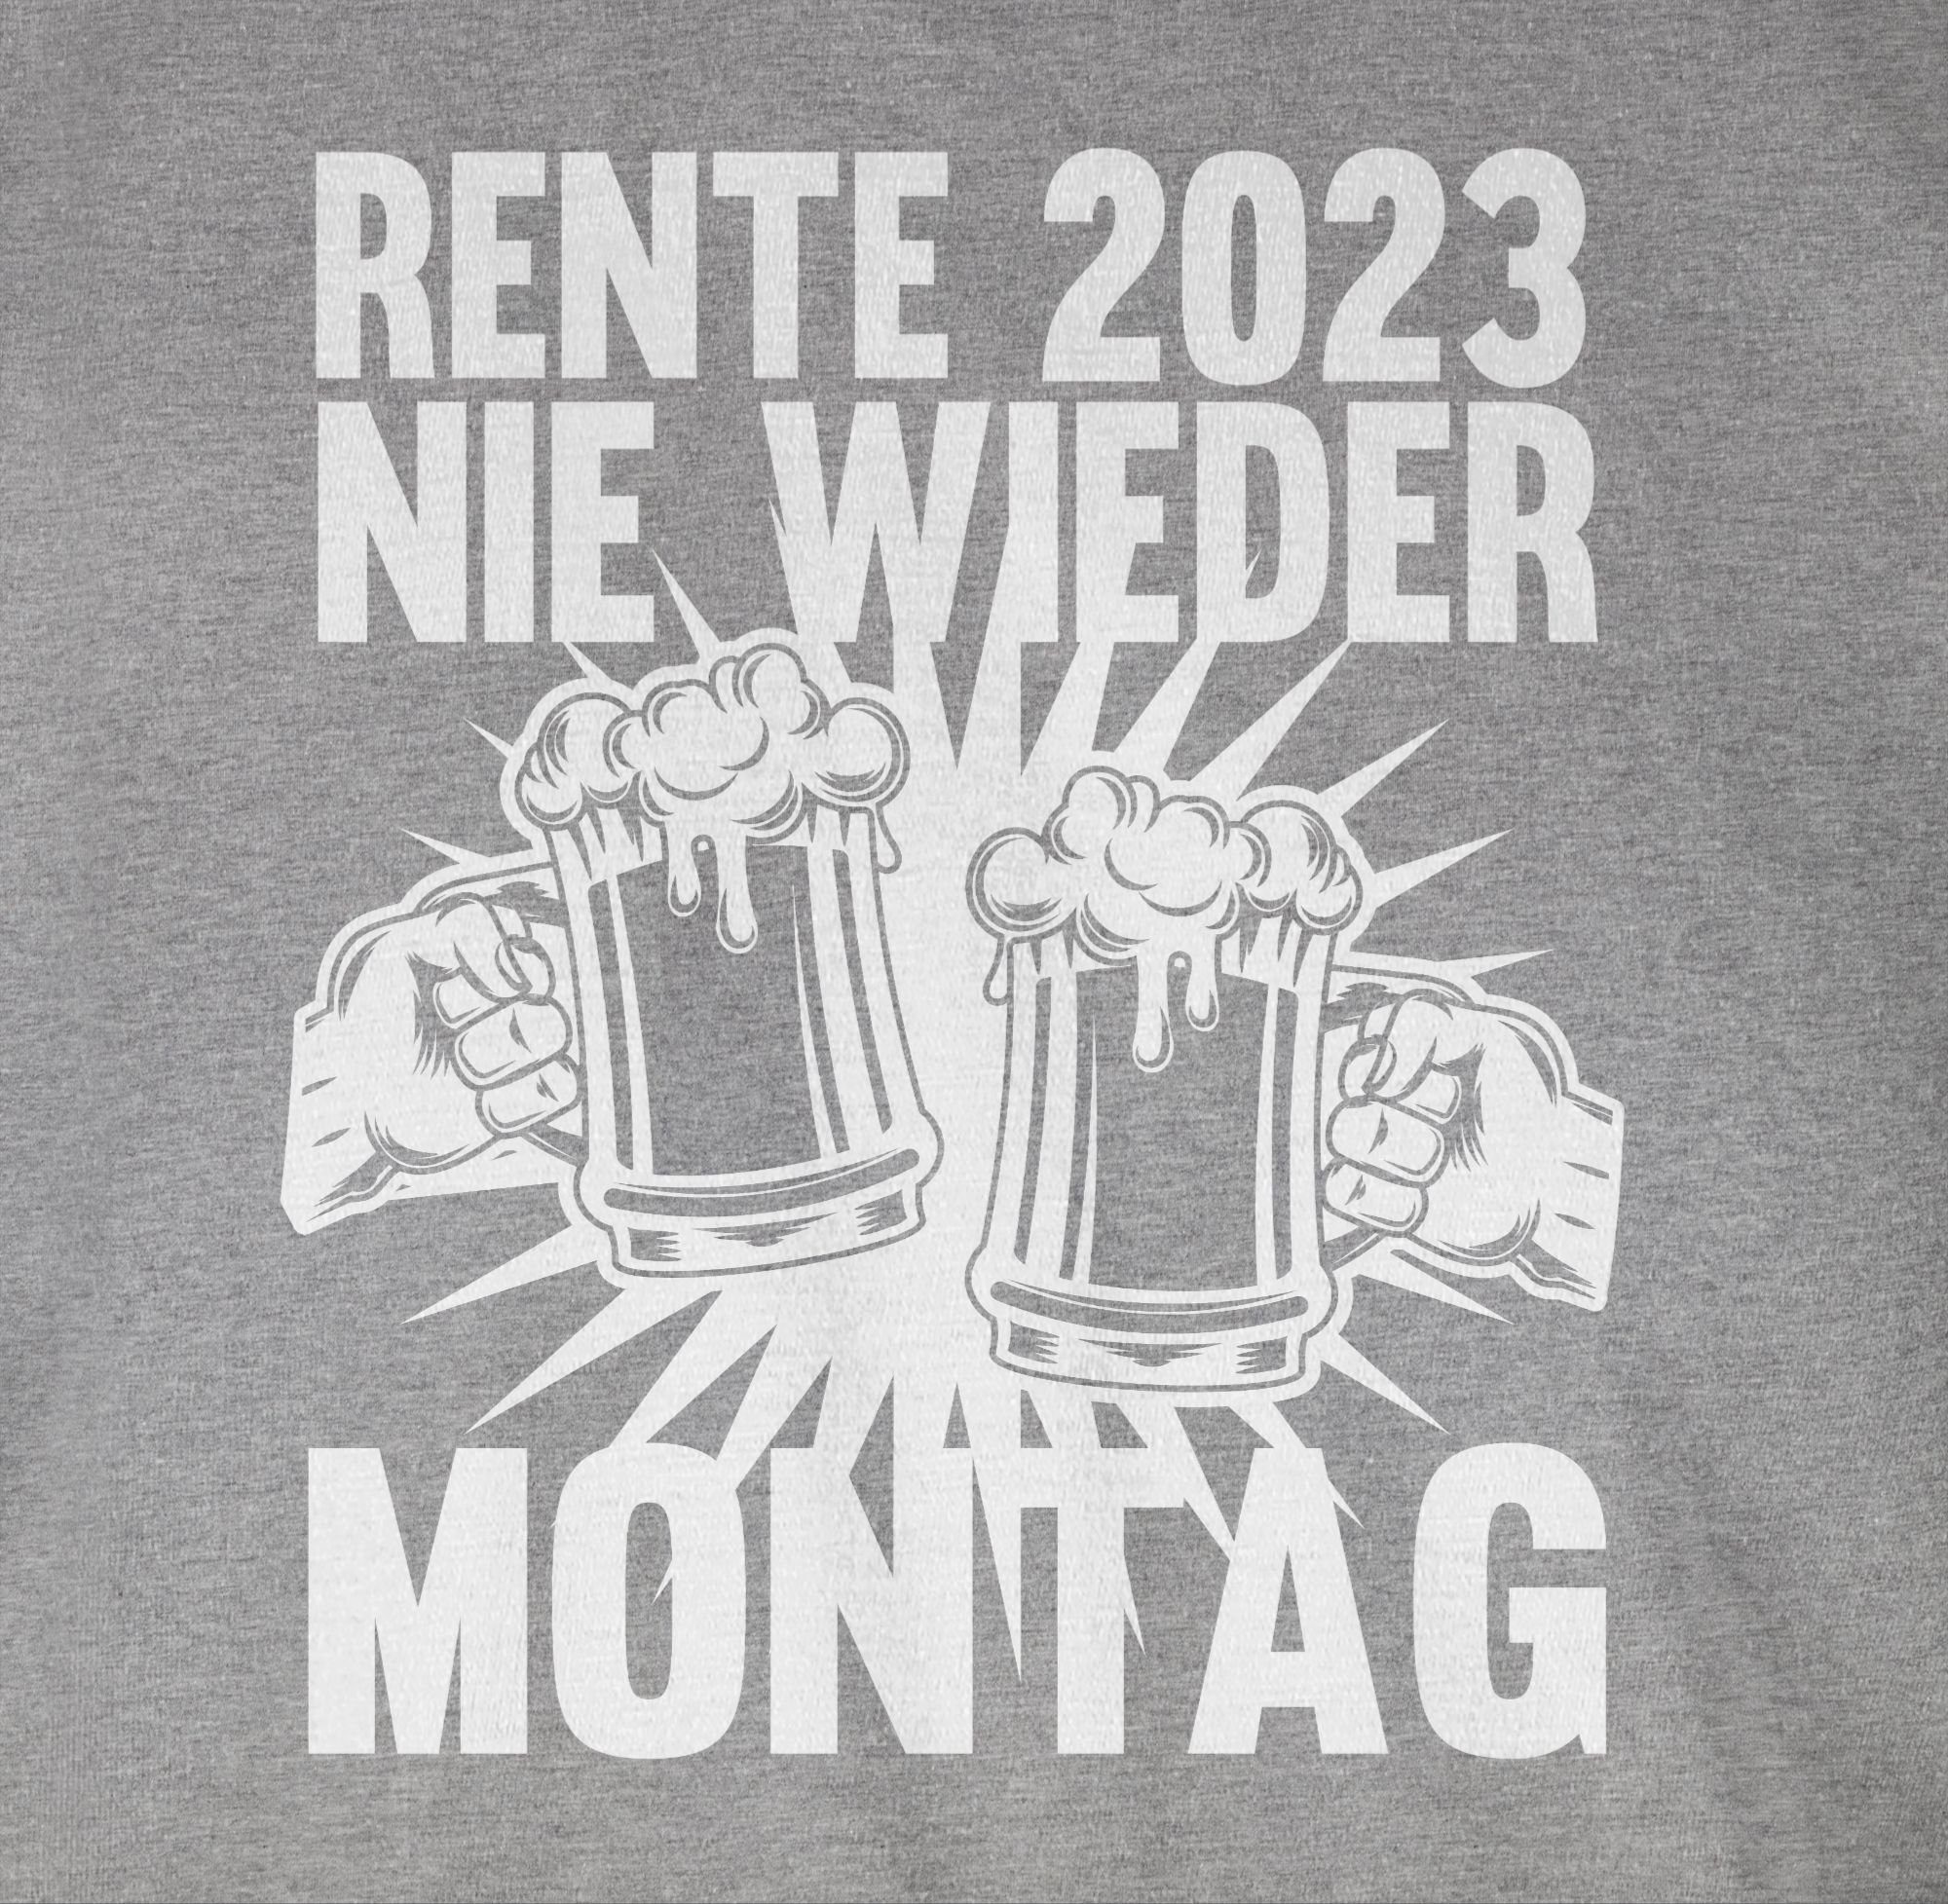 T-Shirt meliert Rentner Grau 2 wieder Montag Geschenk 2023 Shirtracer Rente Nie